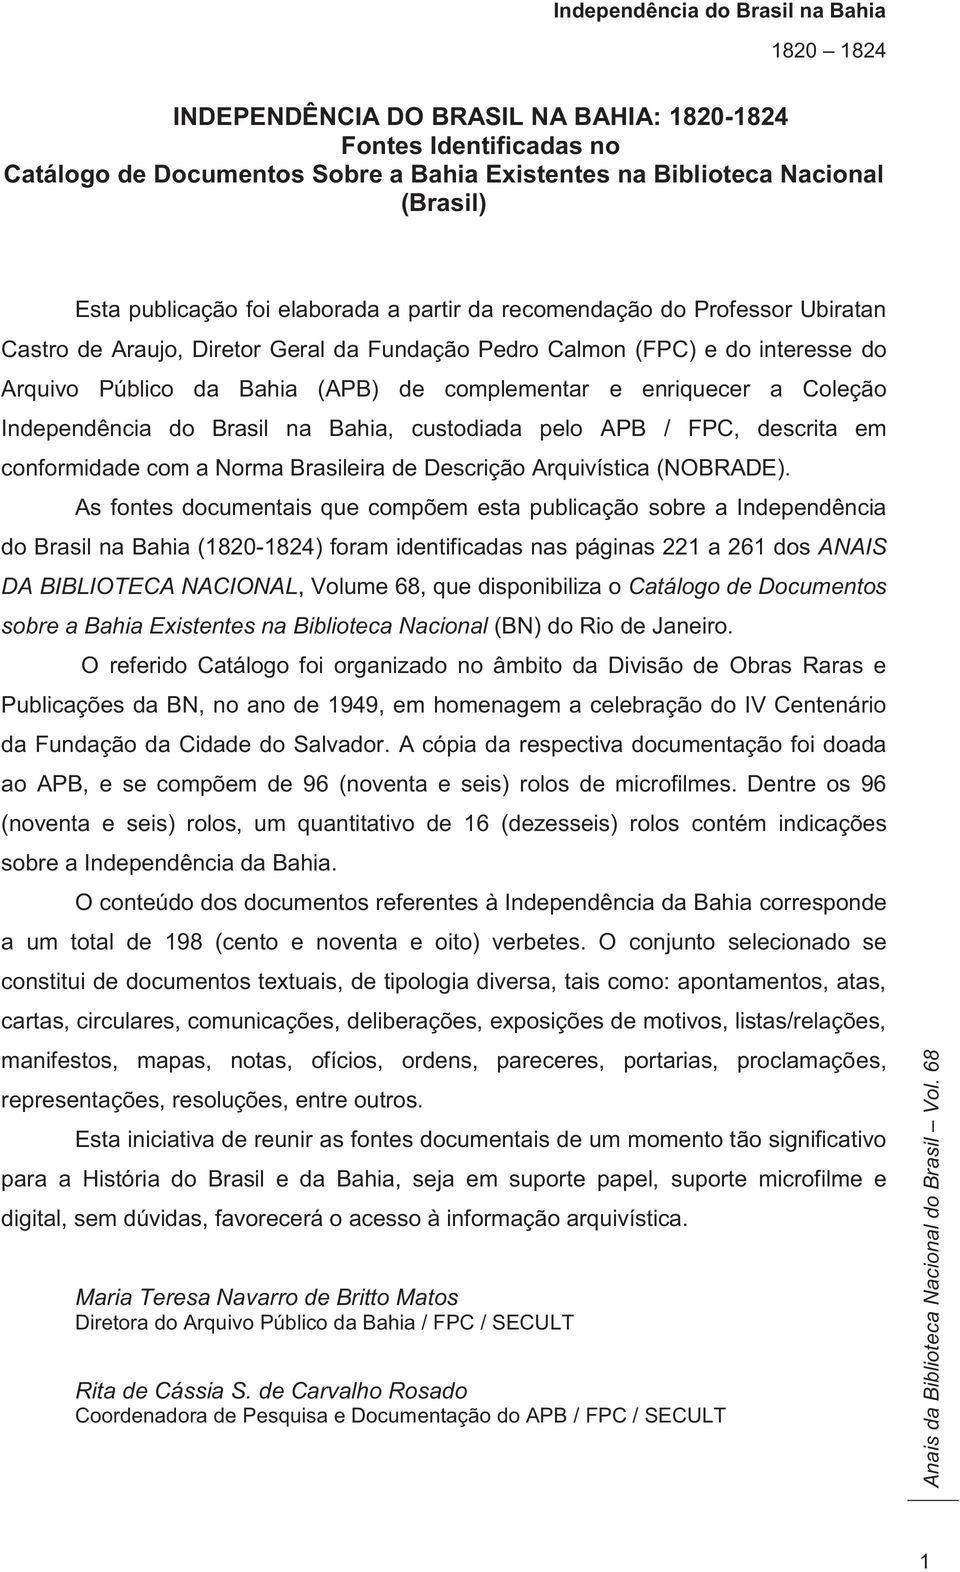 do Brasil na Bahia, custodiada pelo APB / FPC, descrita em conformidade com a Norma Brasileira de Descrição Arquivística (NOBRADE).